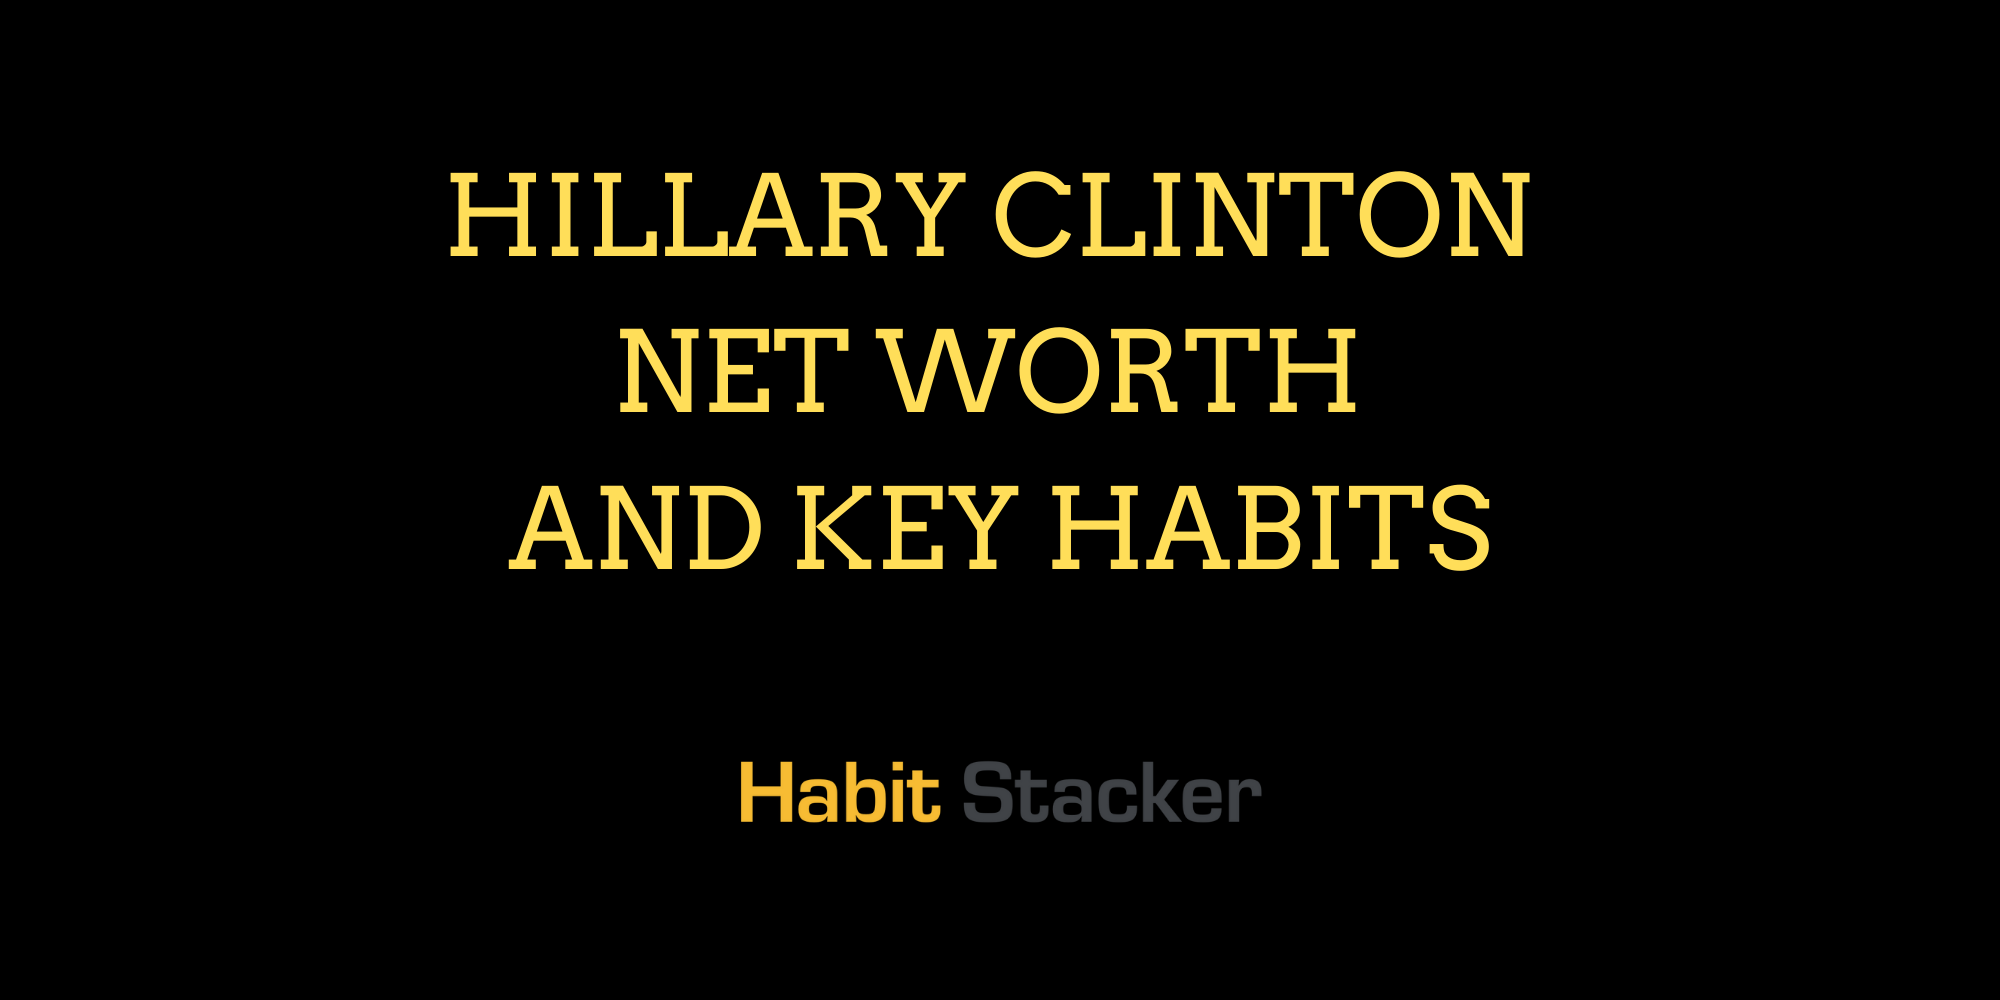 Hillary Clinton Net Worth and Key Habits